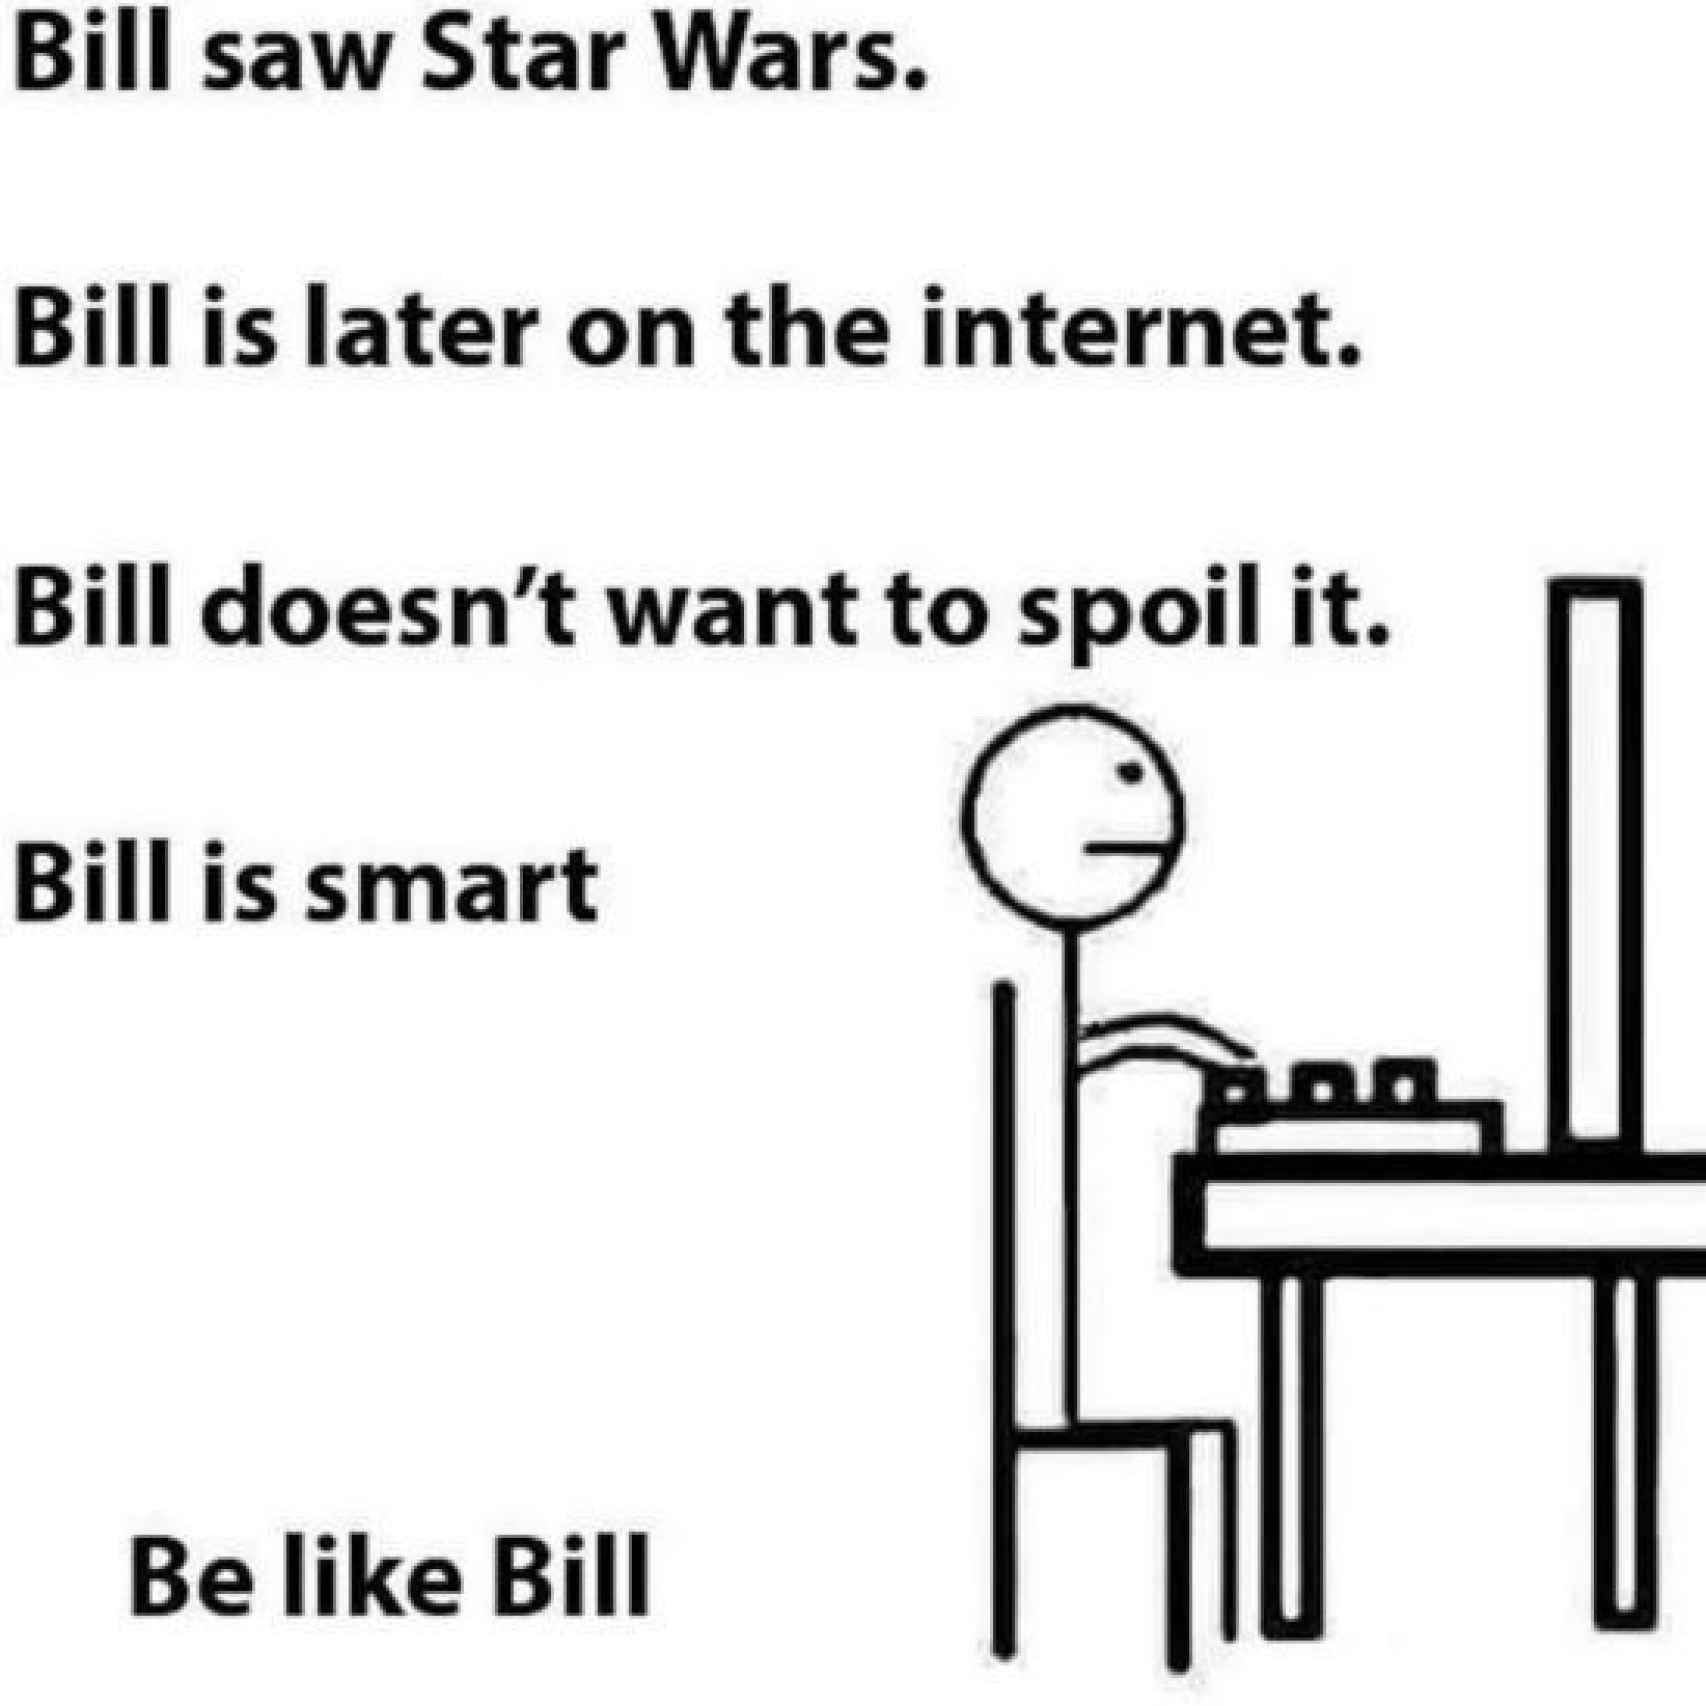 Bill ha visto Star Wars pero no te la revienta.